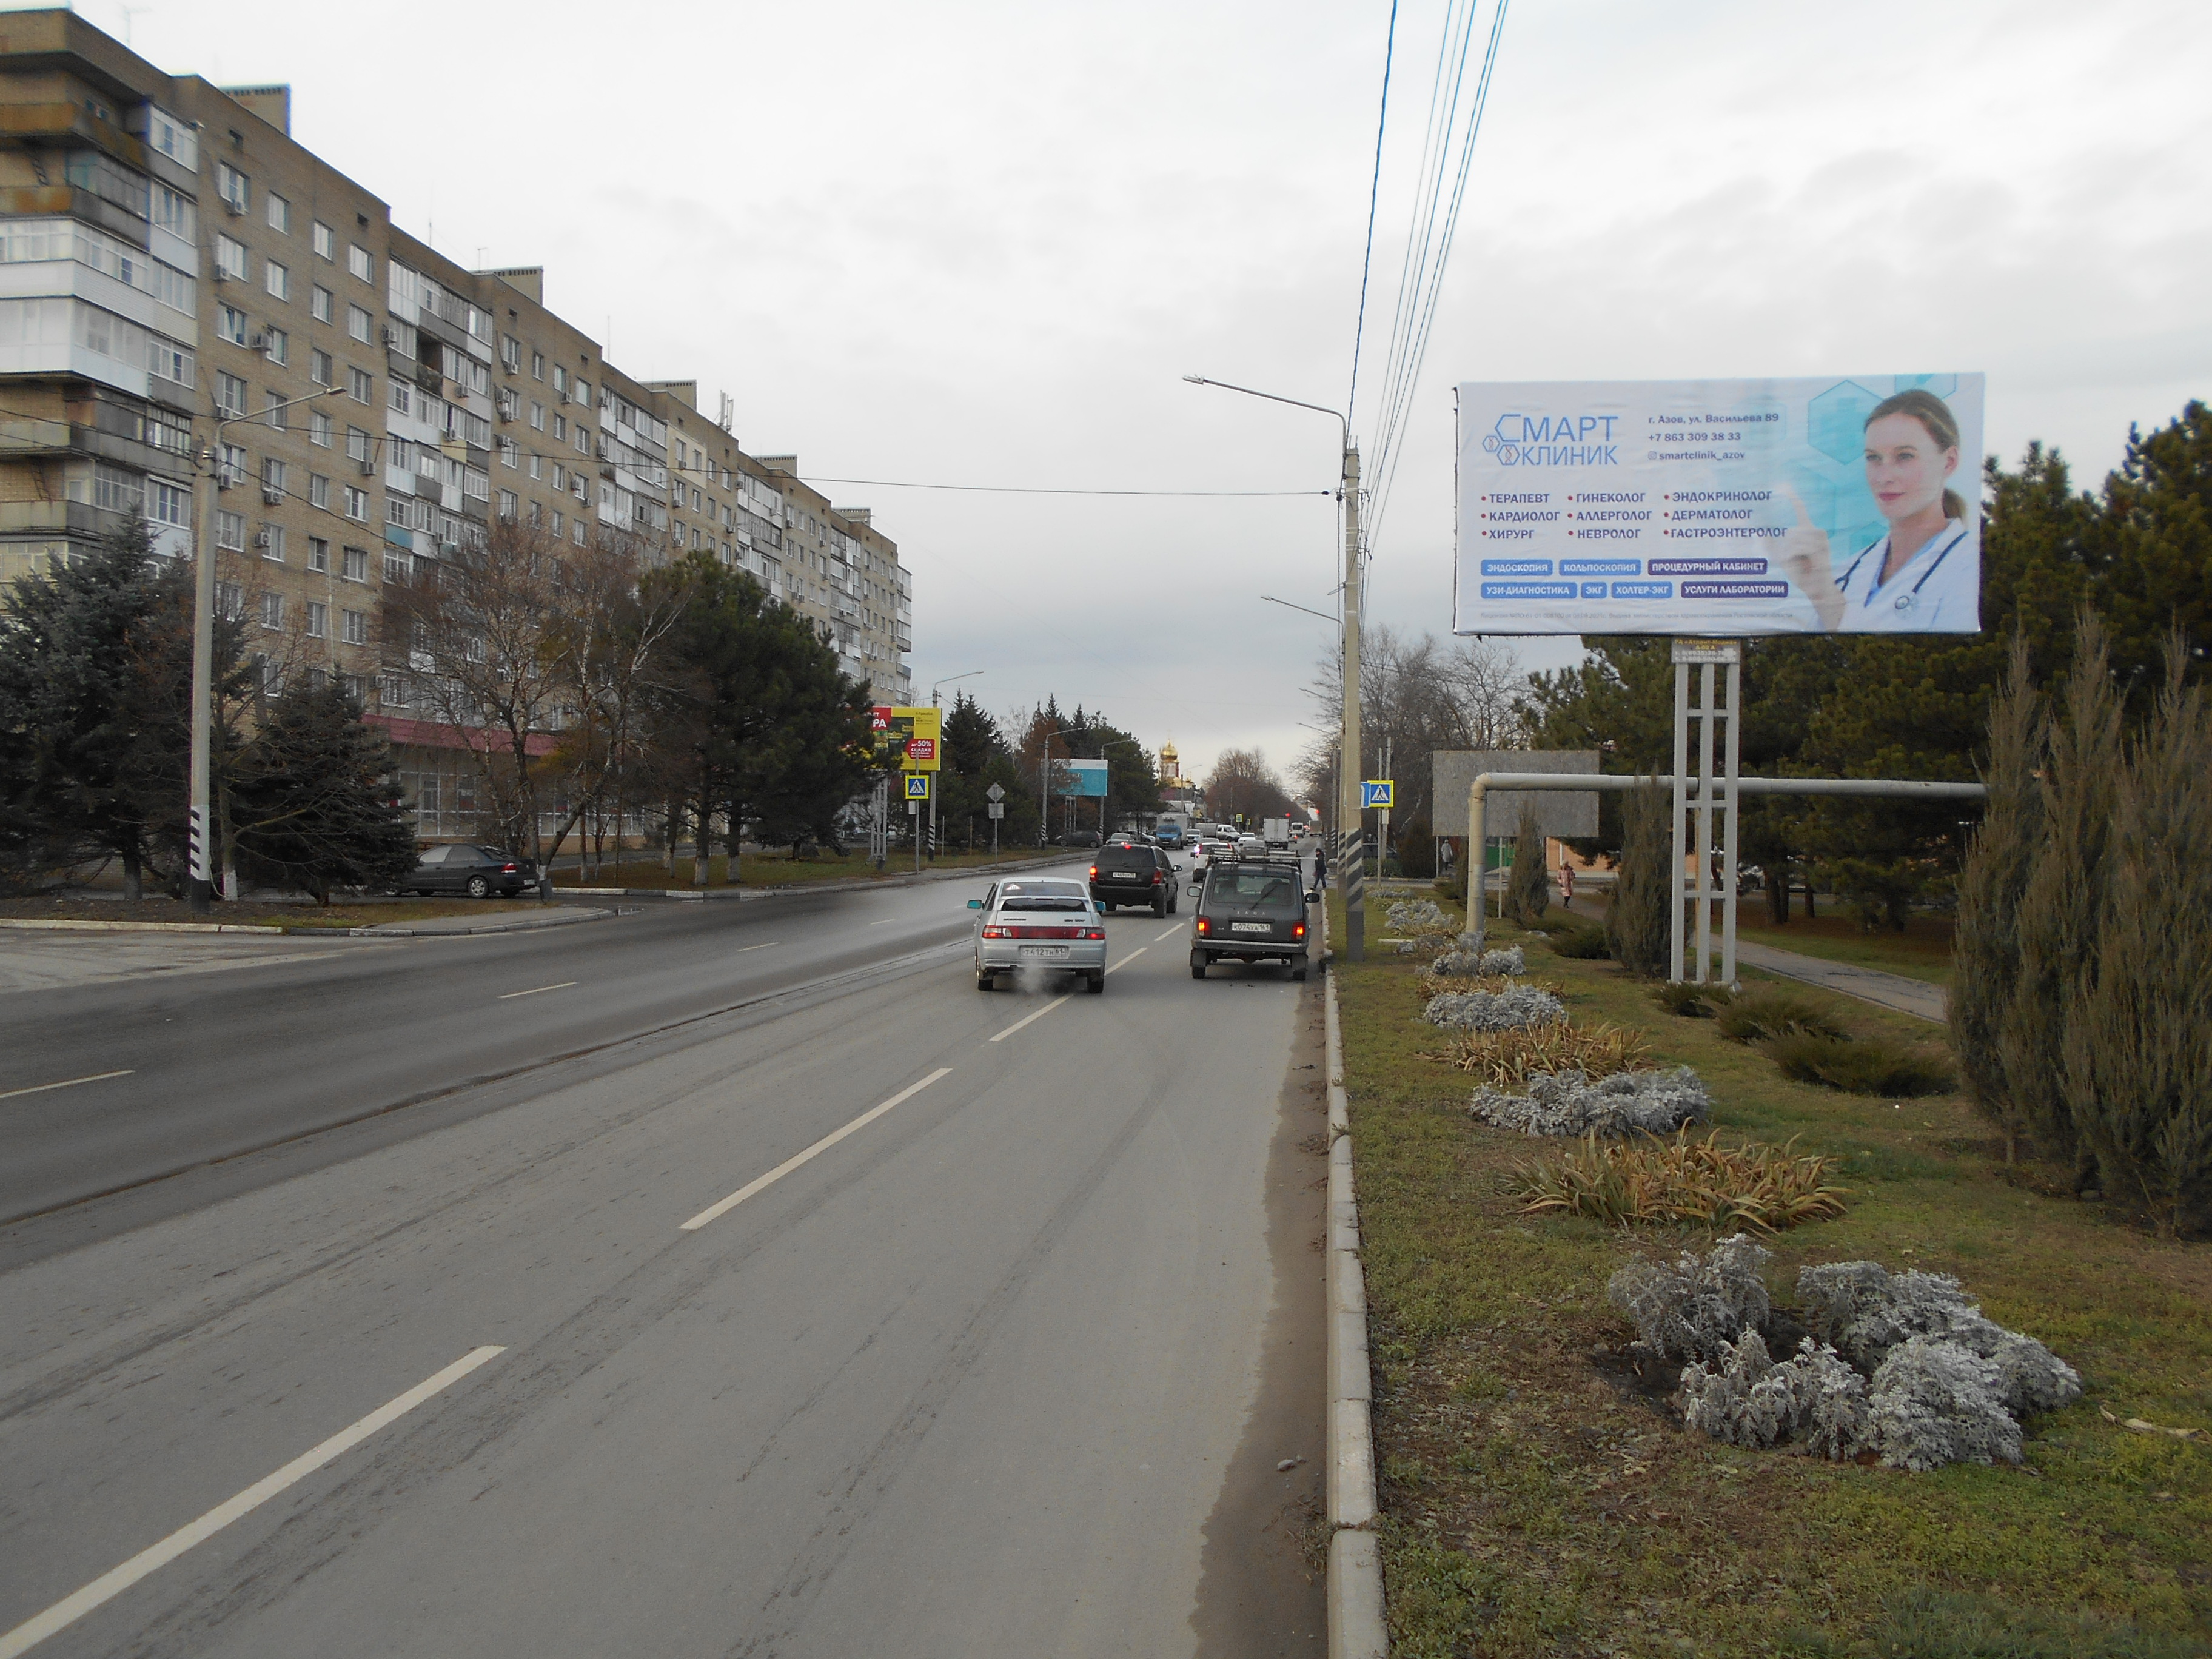 Стартовала реклама "СмартКлиник" в г. Азов